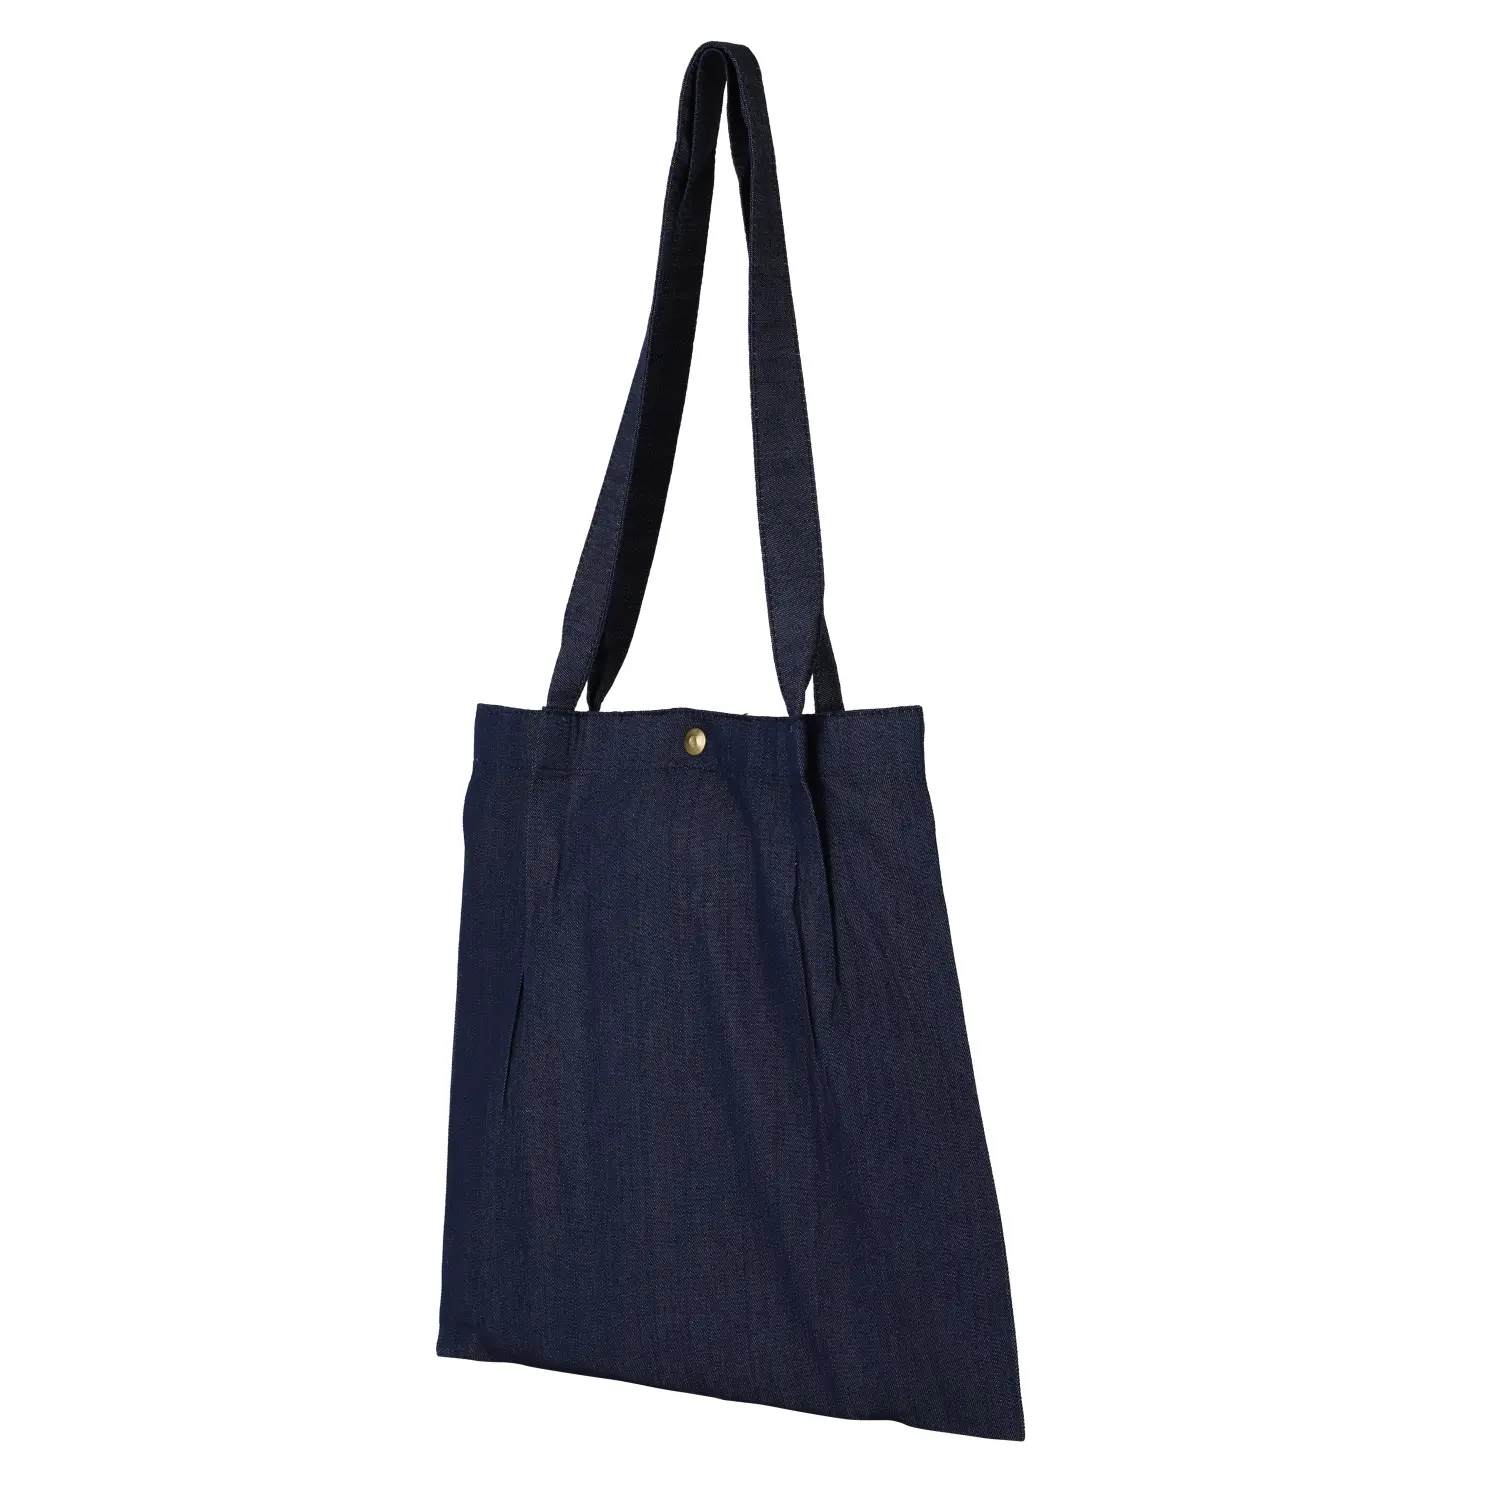 Denim Tote Bag Shopping Bag Promotional Bag Conference Bag Institutional bag-02